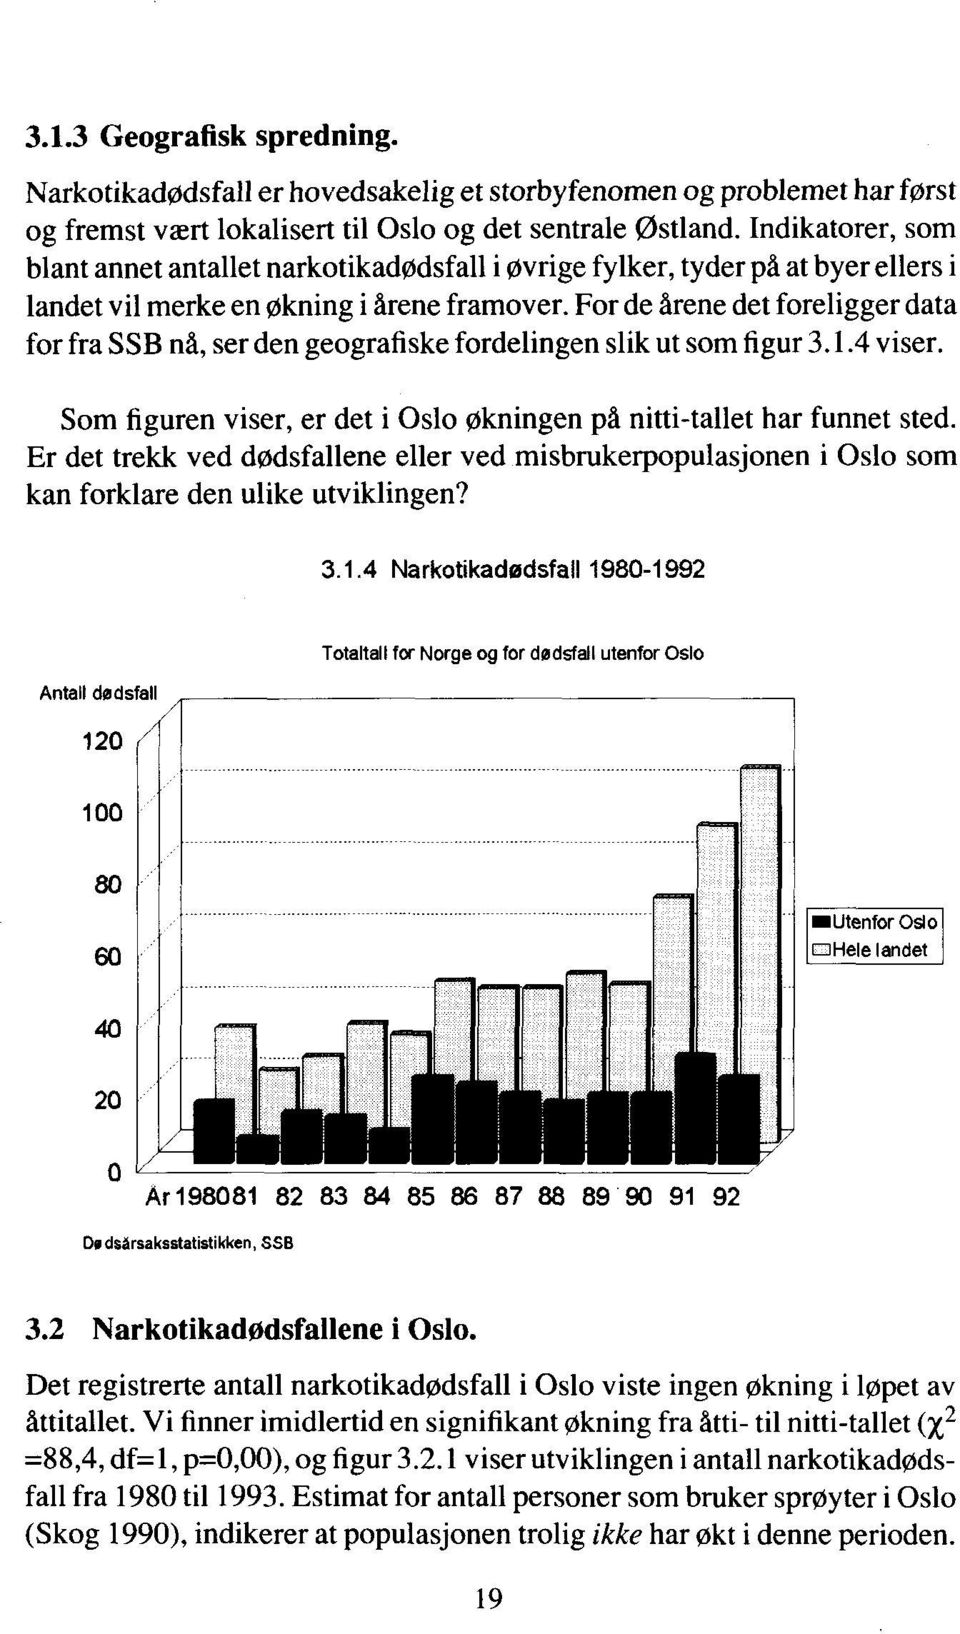 For de årene det foreligger data for fra SSB nå, ser den geografiske fordelingen slik ut som figur 3.1.4 viser. Som figuren viser, er det i Oslo Økningen på nitti-tallet har funnet sted.